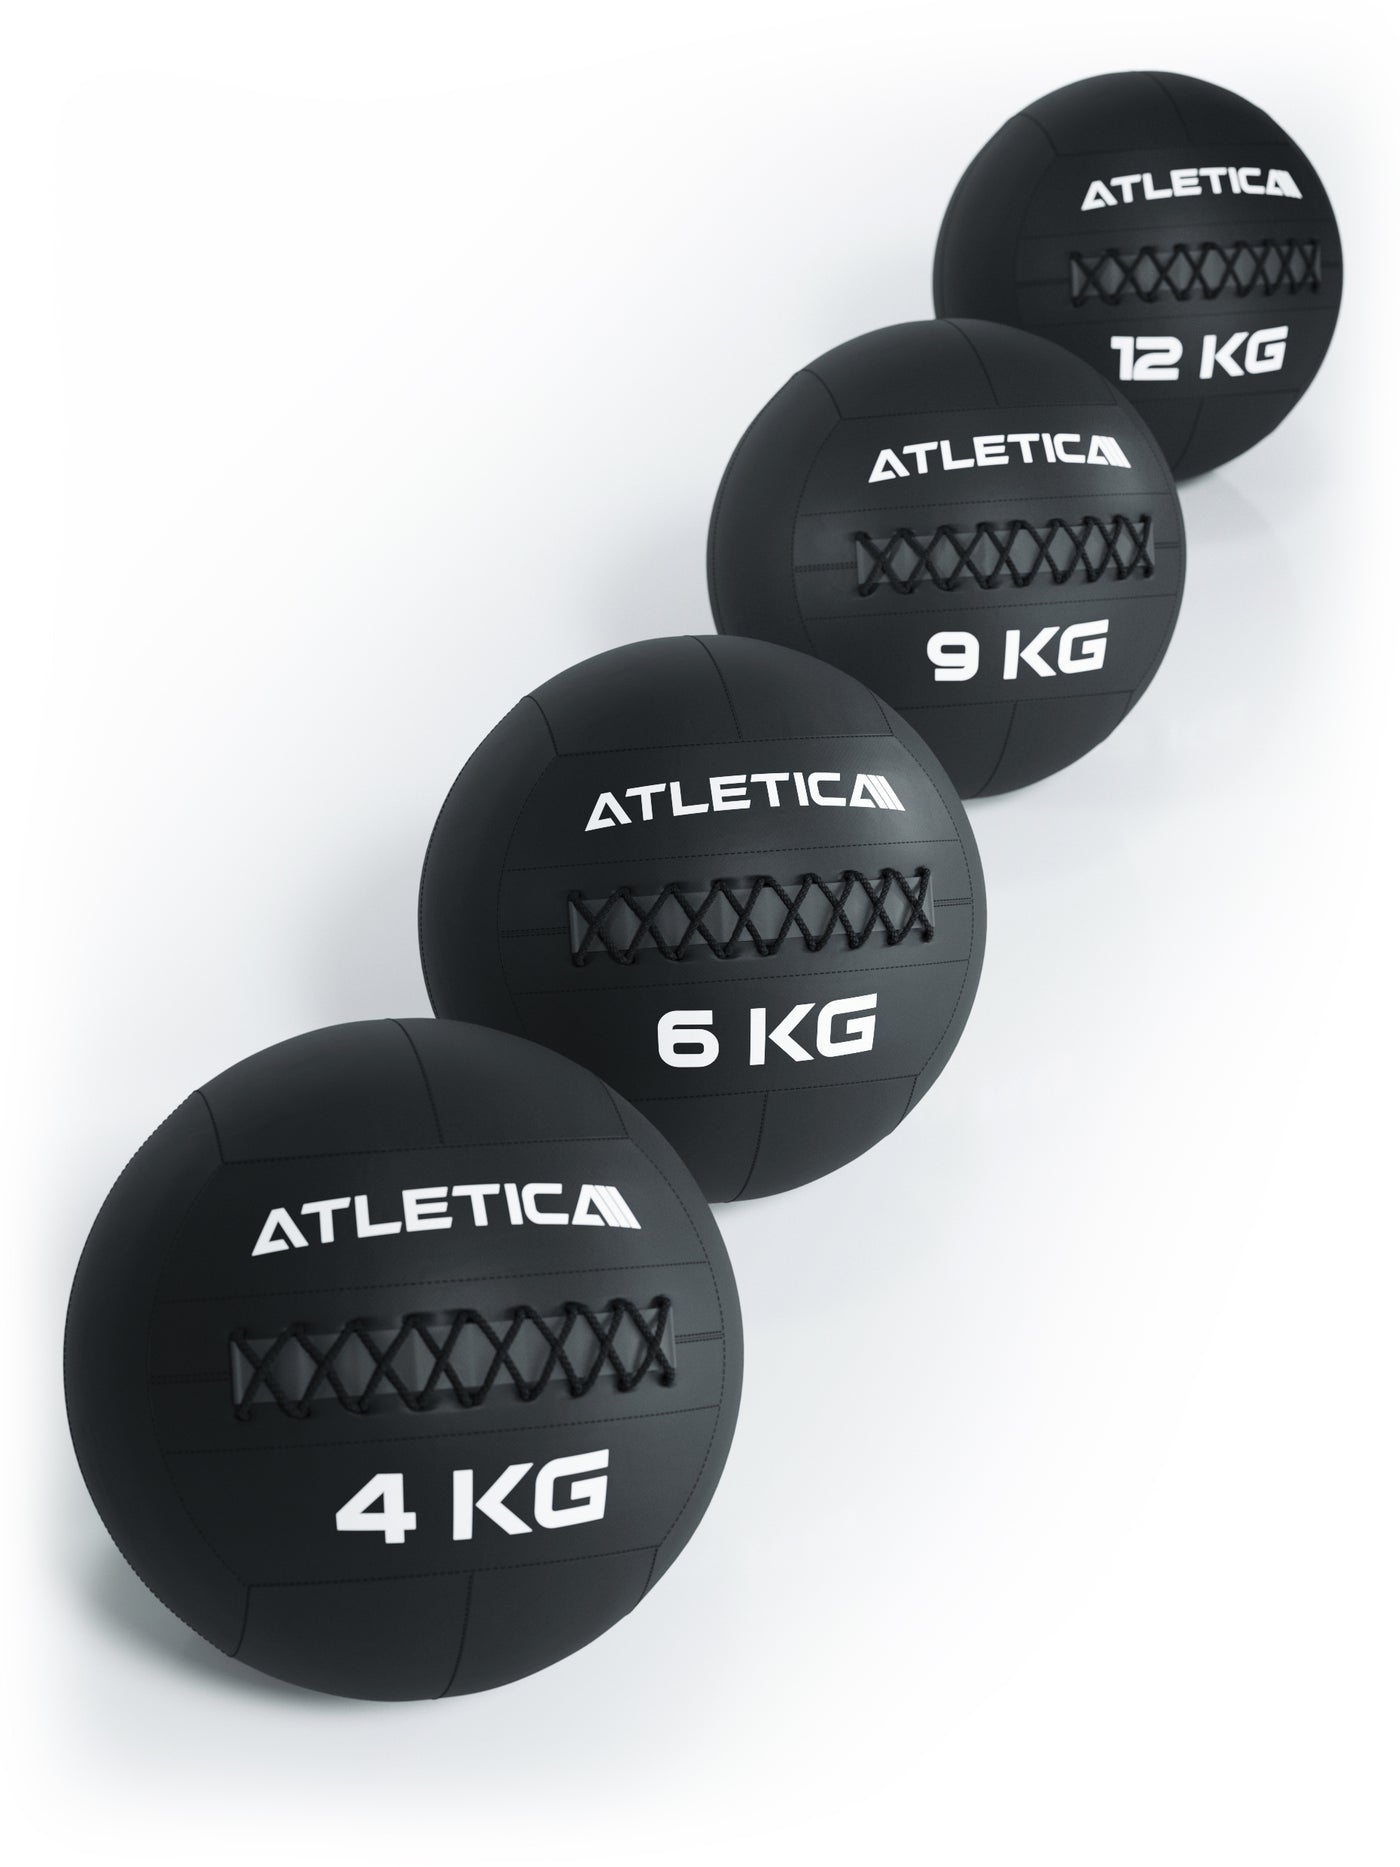 Wallballset Gewichte, #size_6-kg